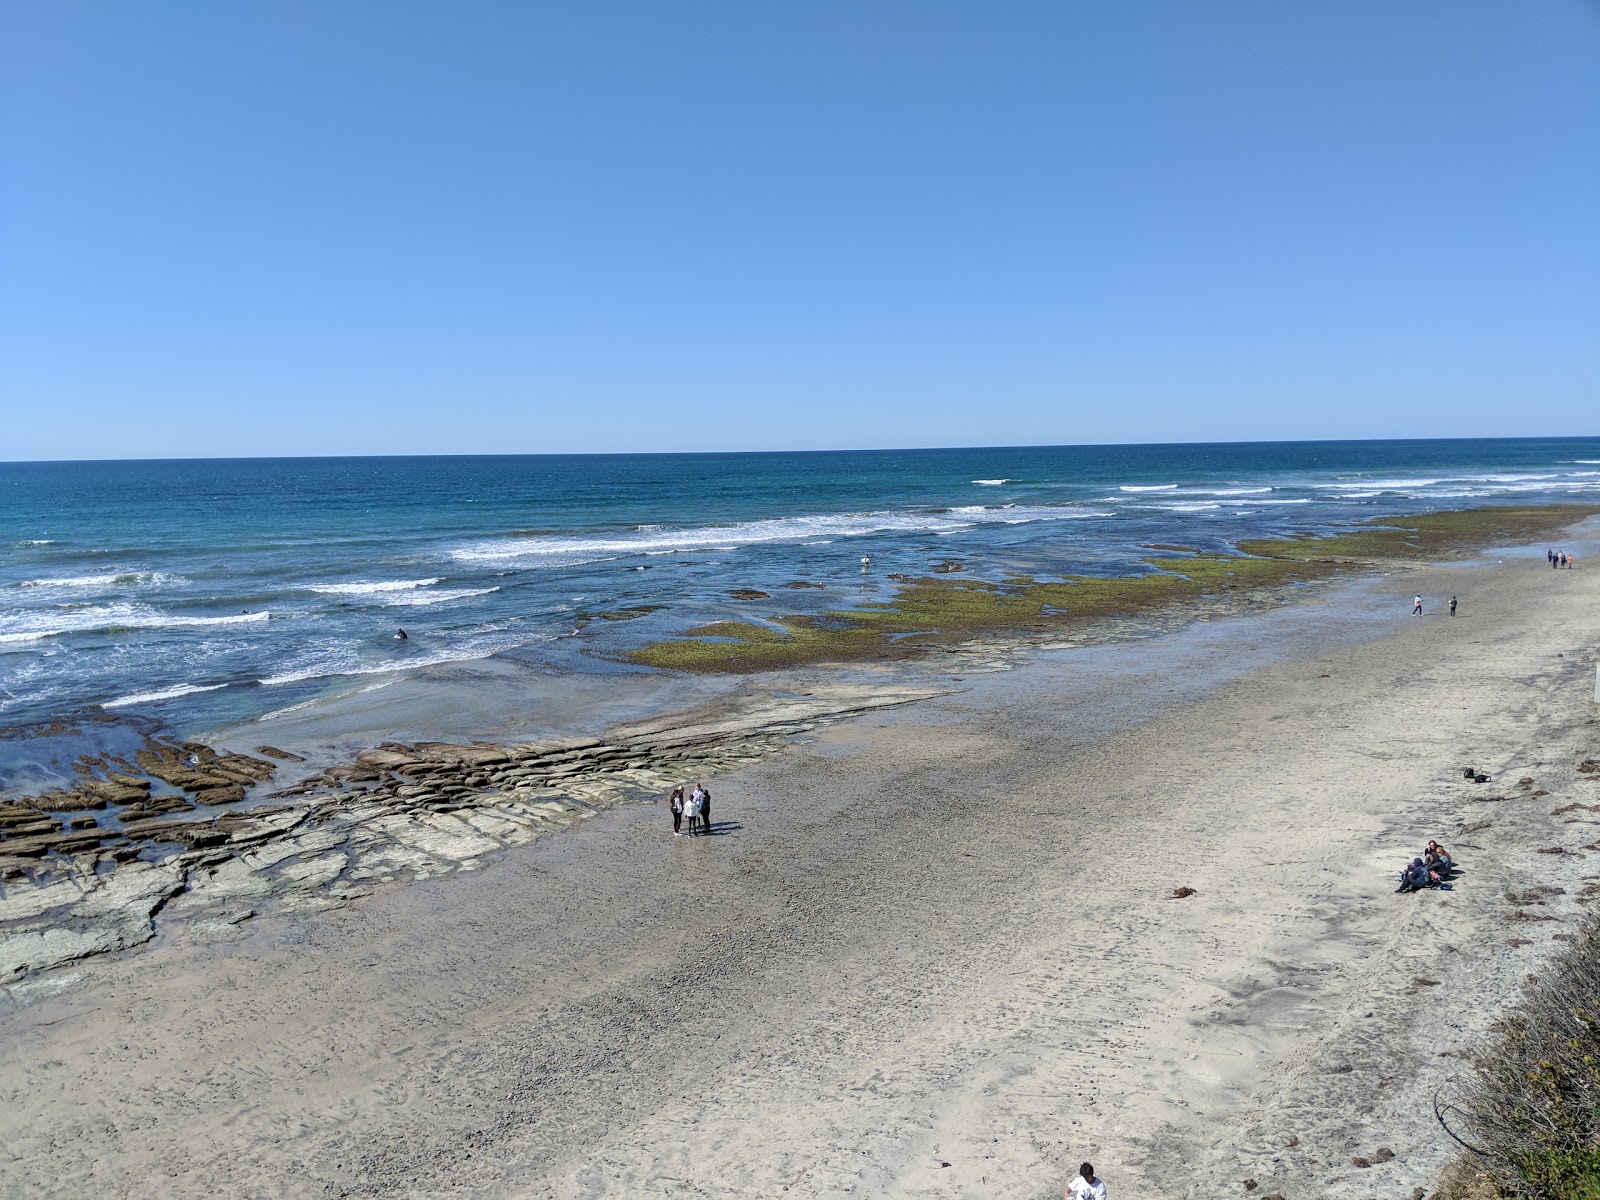 Fotografie cu San Elijo beach cu o suprafață de nisip strălucitor și pietre